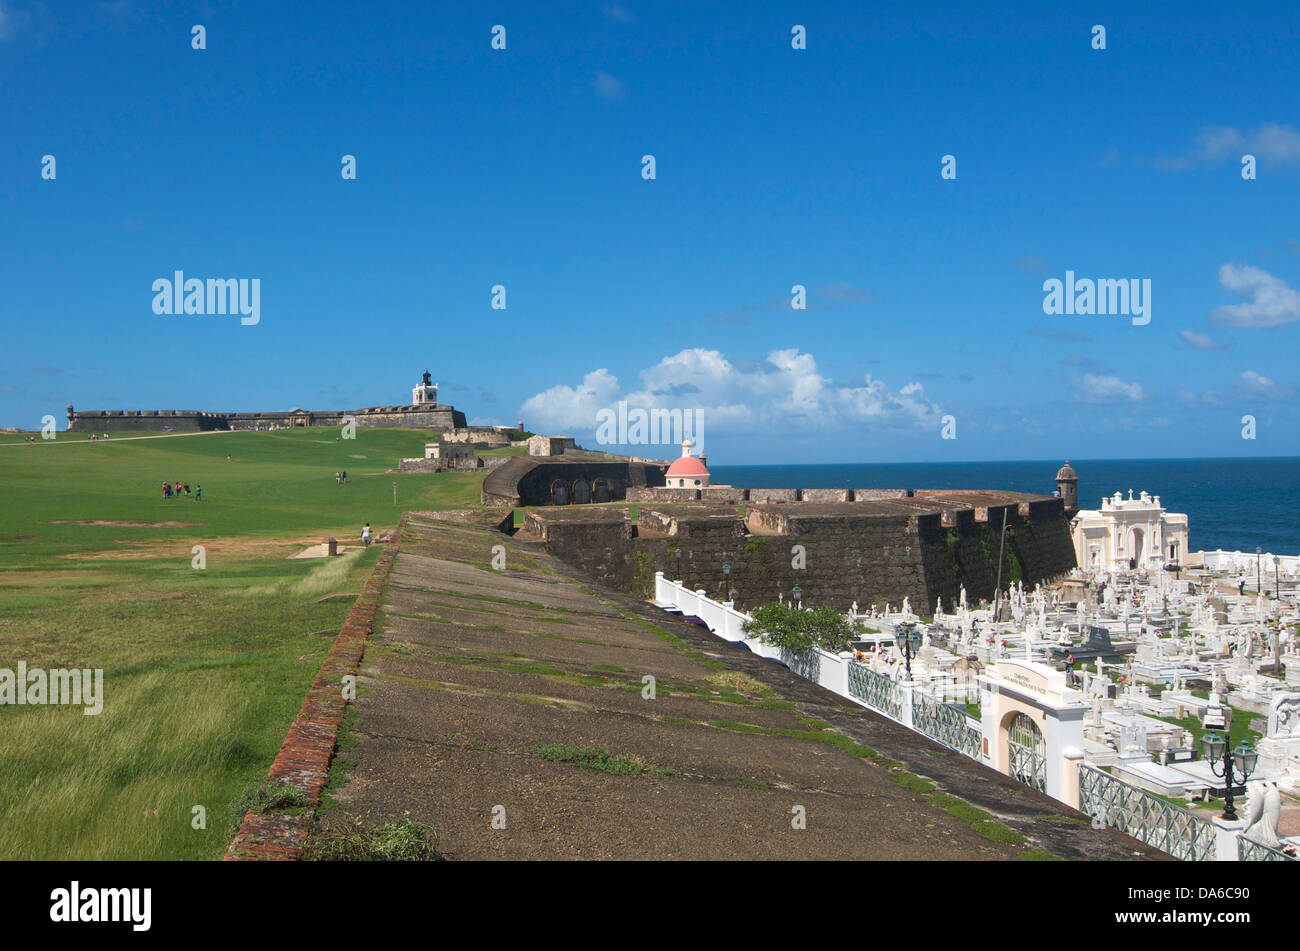 Puerto Rico, el Caribe, Antillas Mayores, Antillas, San Juan, Landmark, lugar de interés histórico, La Fortaleza, el castillo, castl Foto de stock